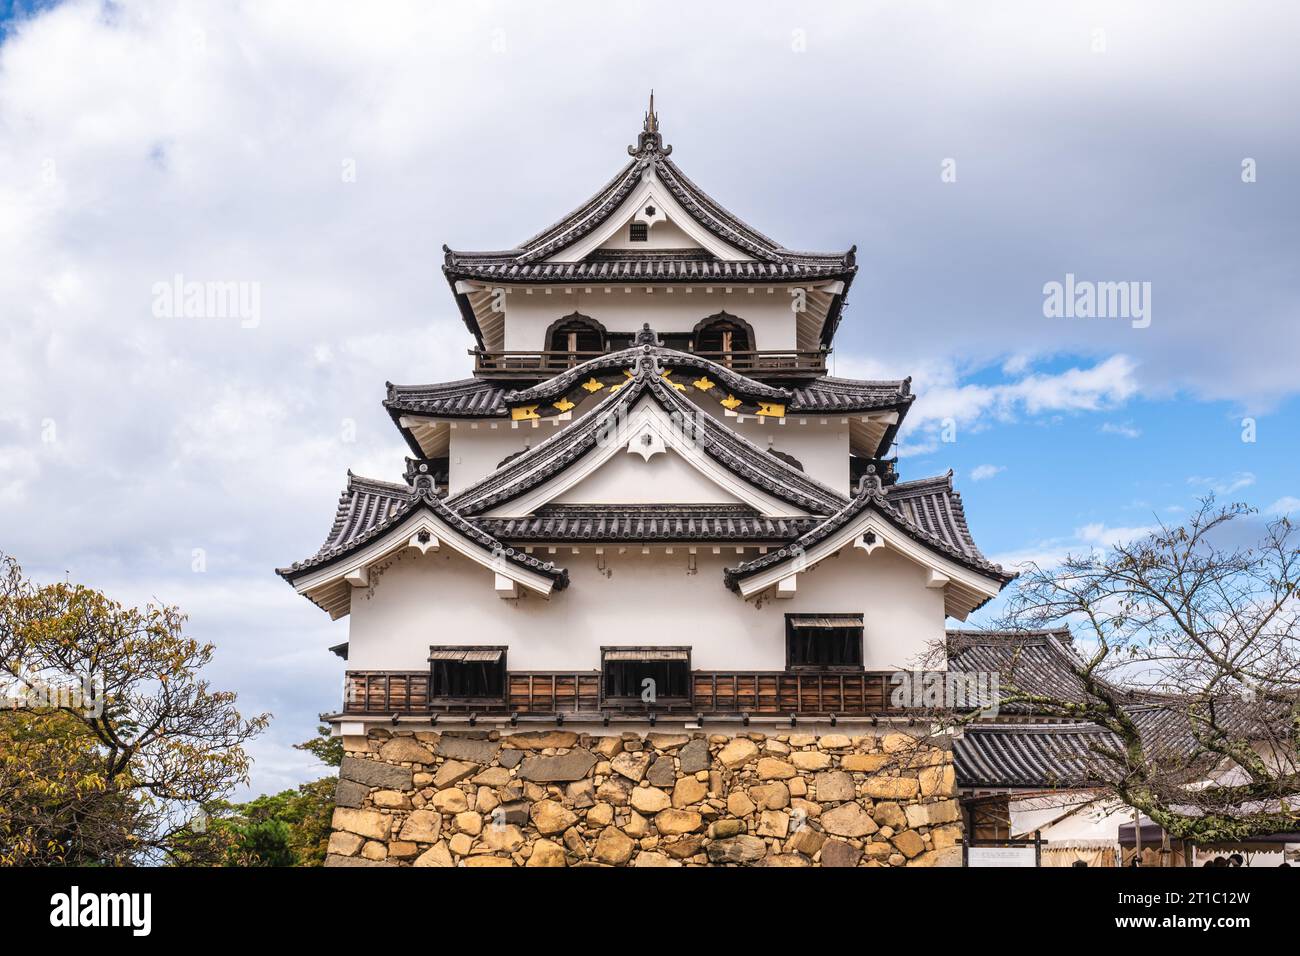 Tenshu del castello di Hikone situato nella città di Hikone, Shiga, giappone Foto Stock